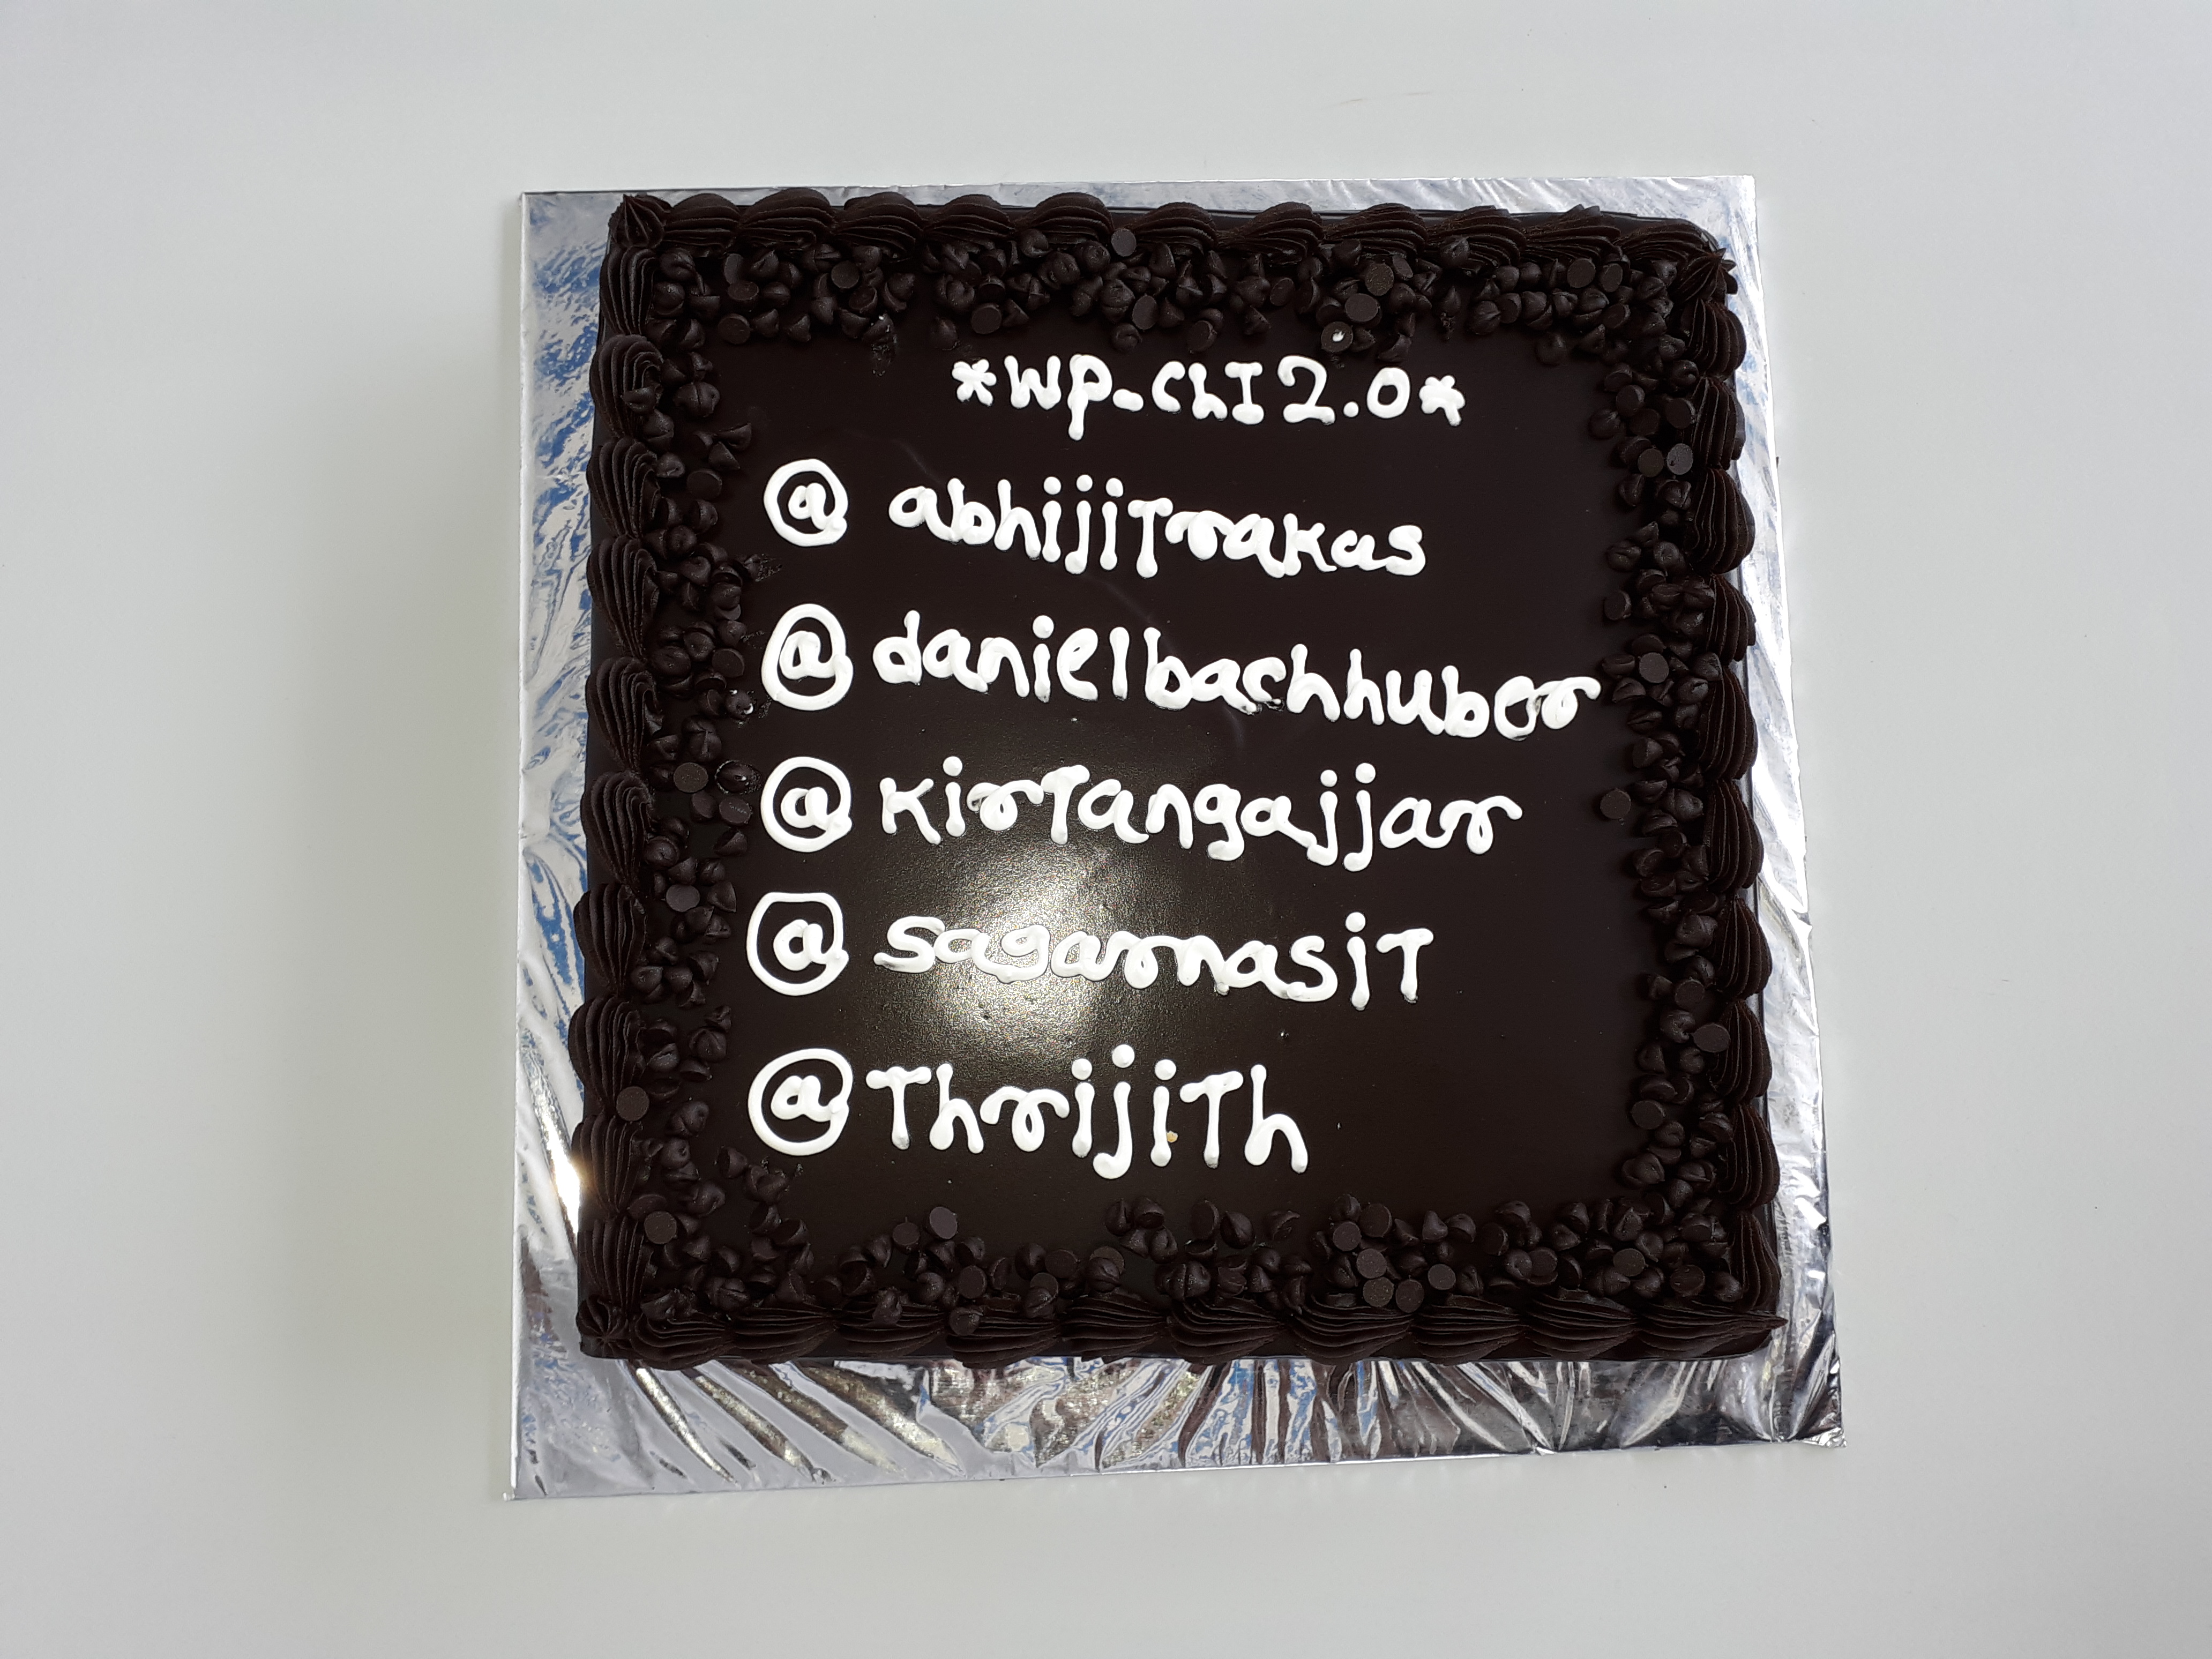 WP-CLI 2.04 Cake